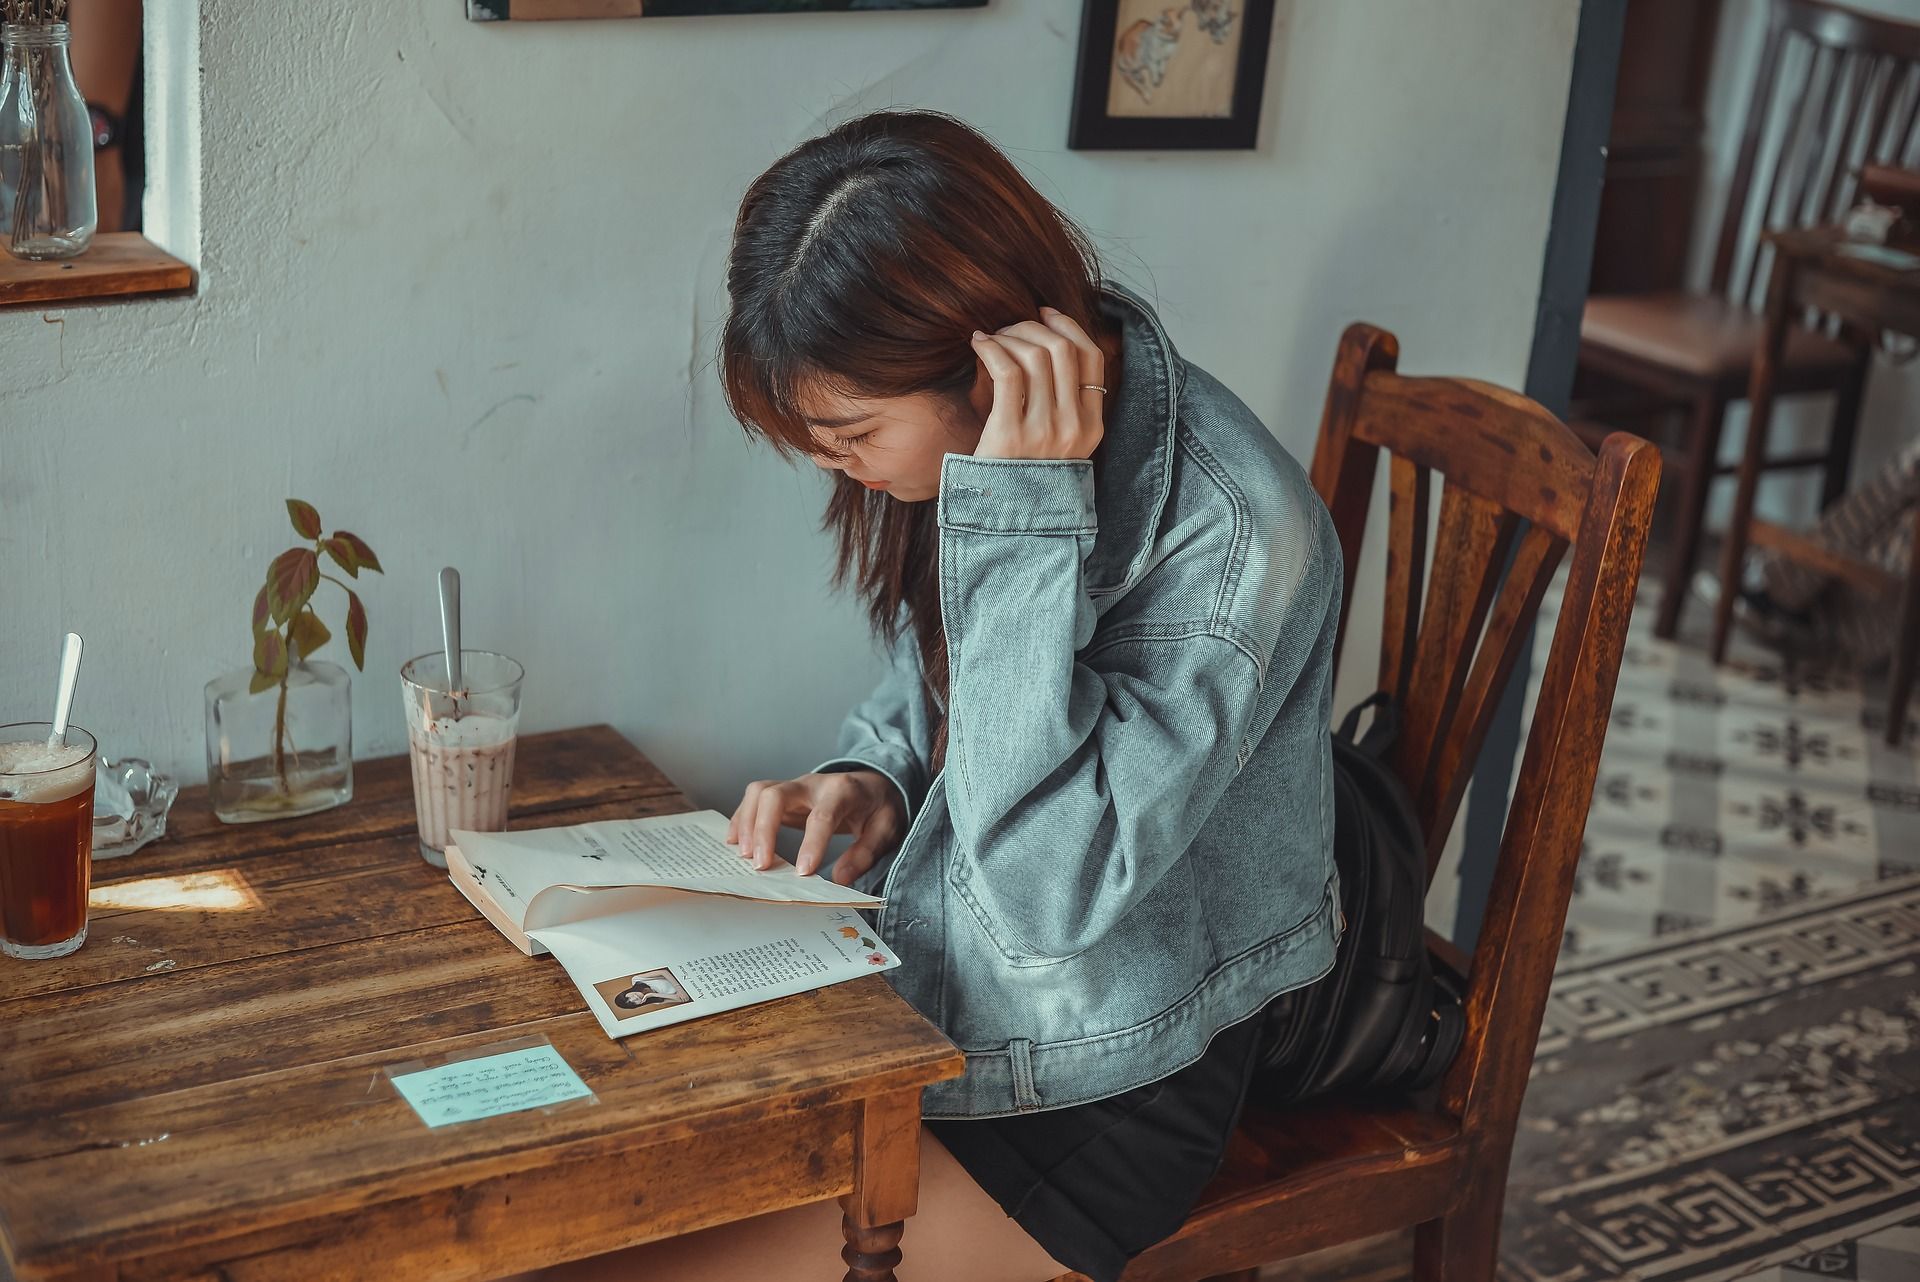 une étudiante lit un livre dans une cafétéria, Image par hoahoa111 de https://pixabay.com/fr/photos/caf%C3%A9-fille-livre-en-train-de-lire-5972490/